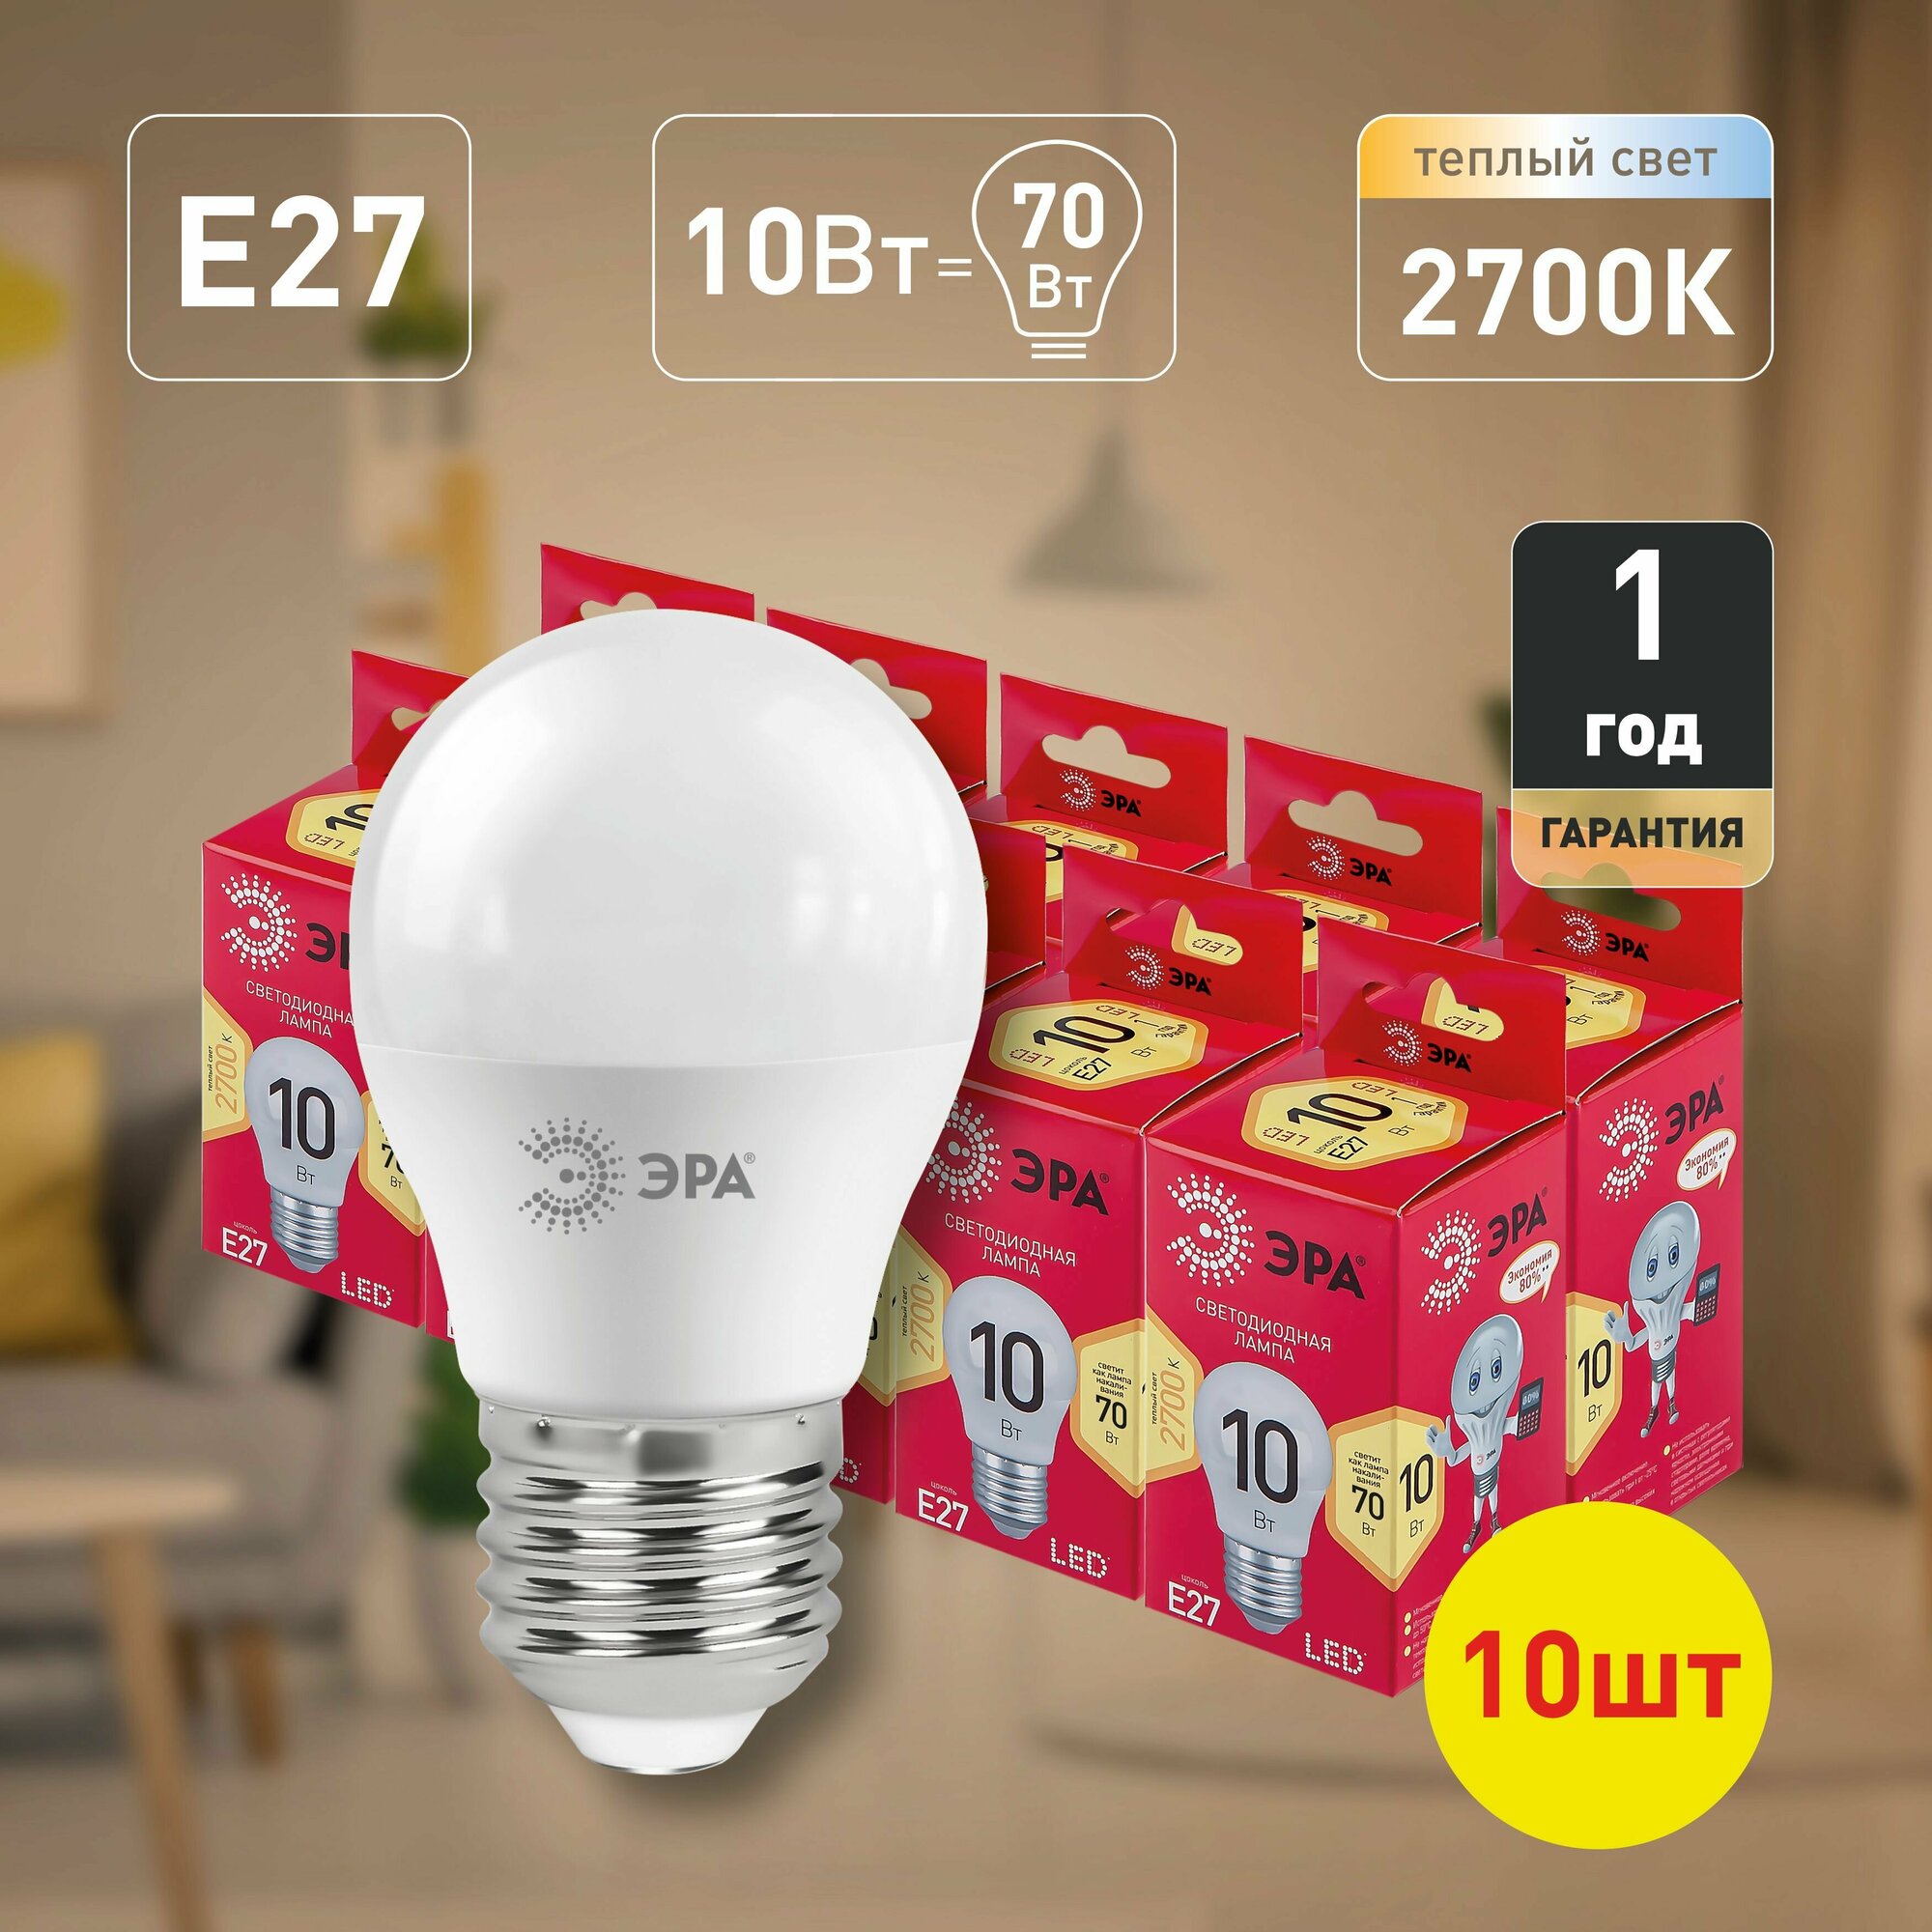 Набор светодиодных лампочек ЭРА LED P45-10W-827-E27 R 2700K шарик 10 Вт 10 штук